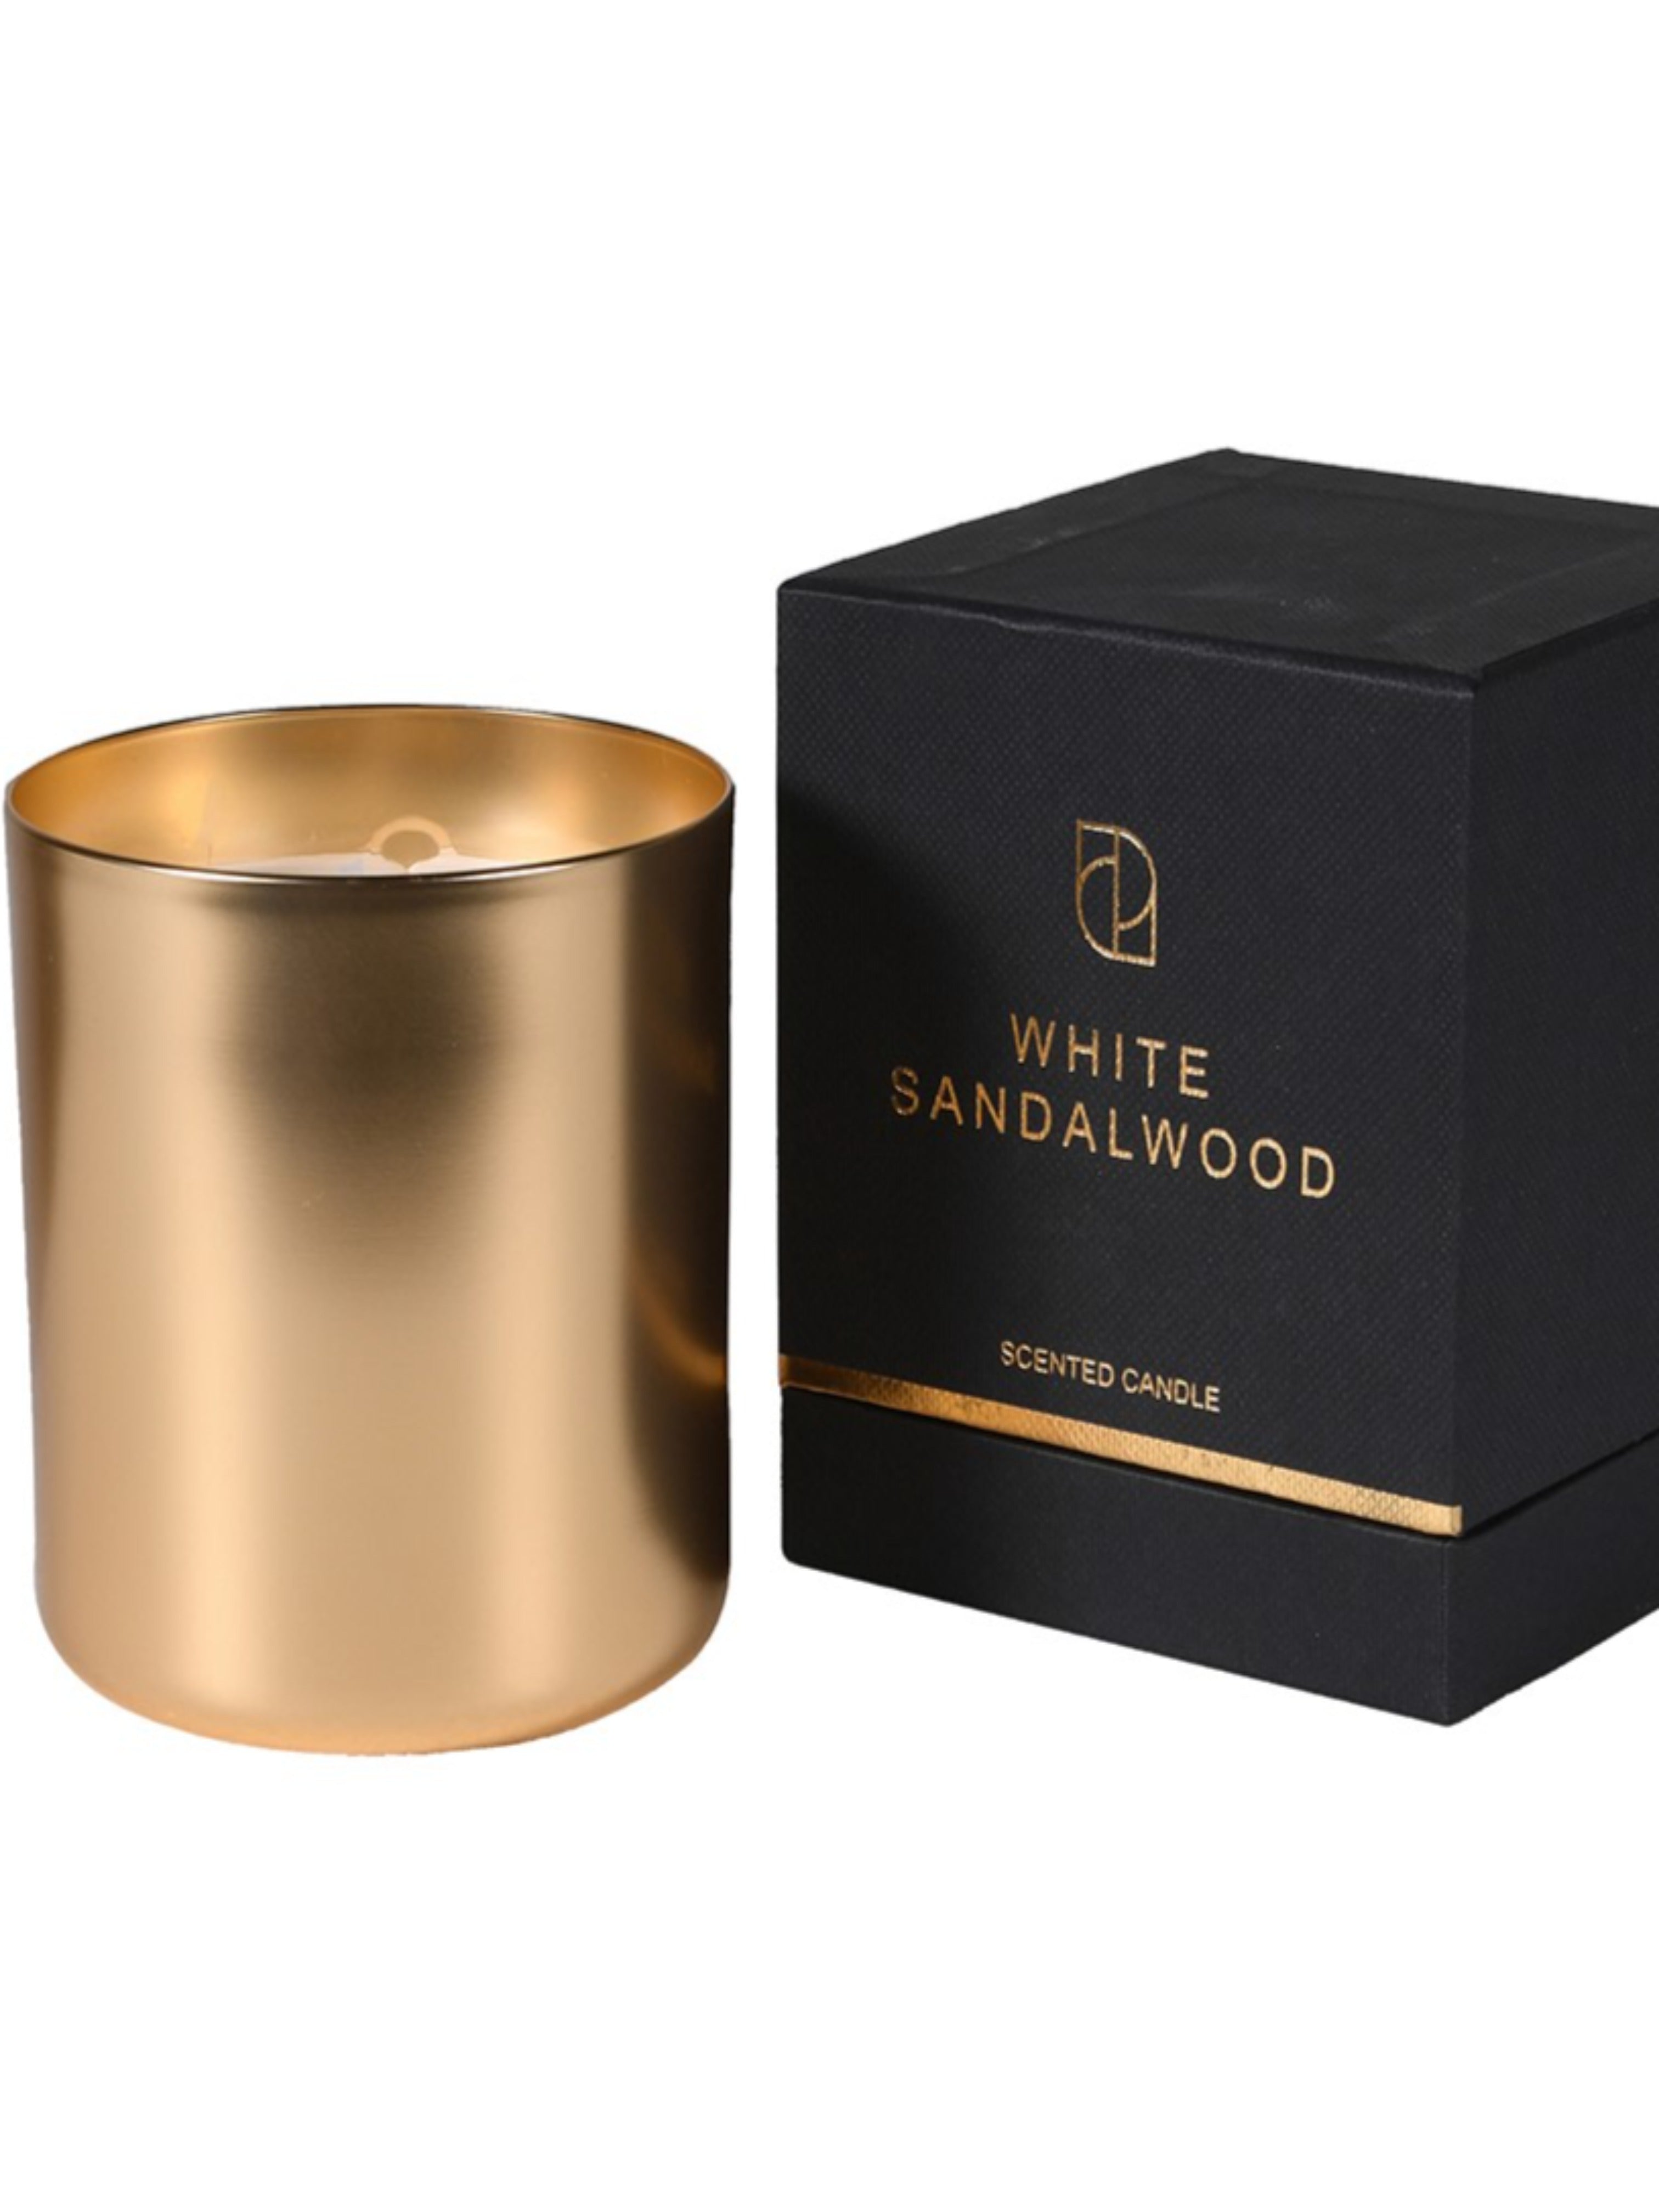 White Sandalwood Gold Candle